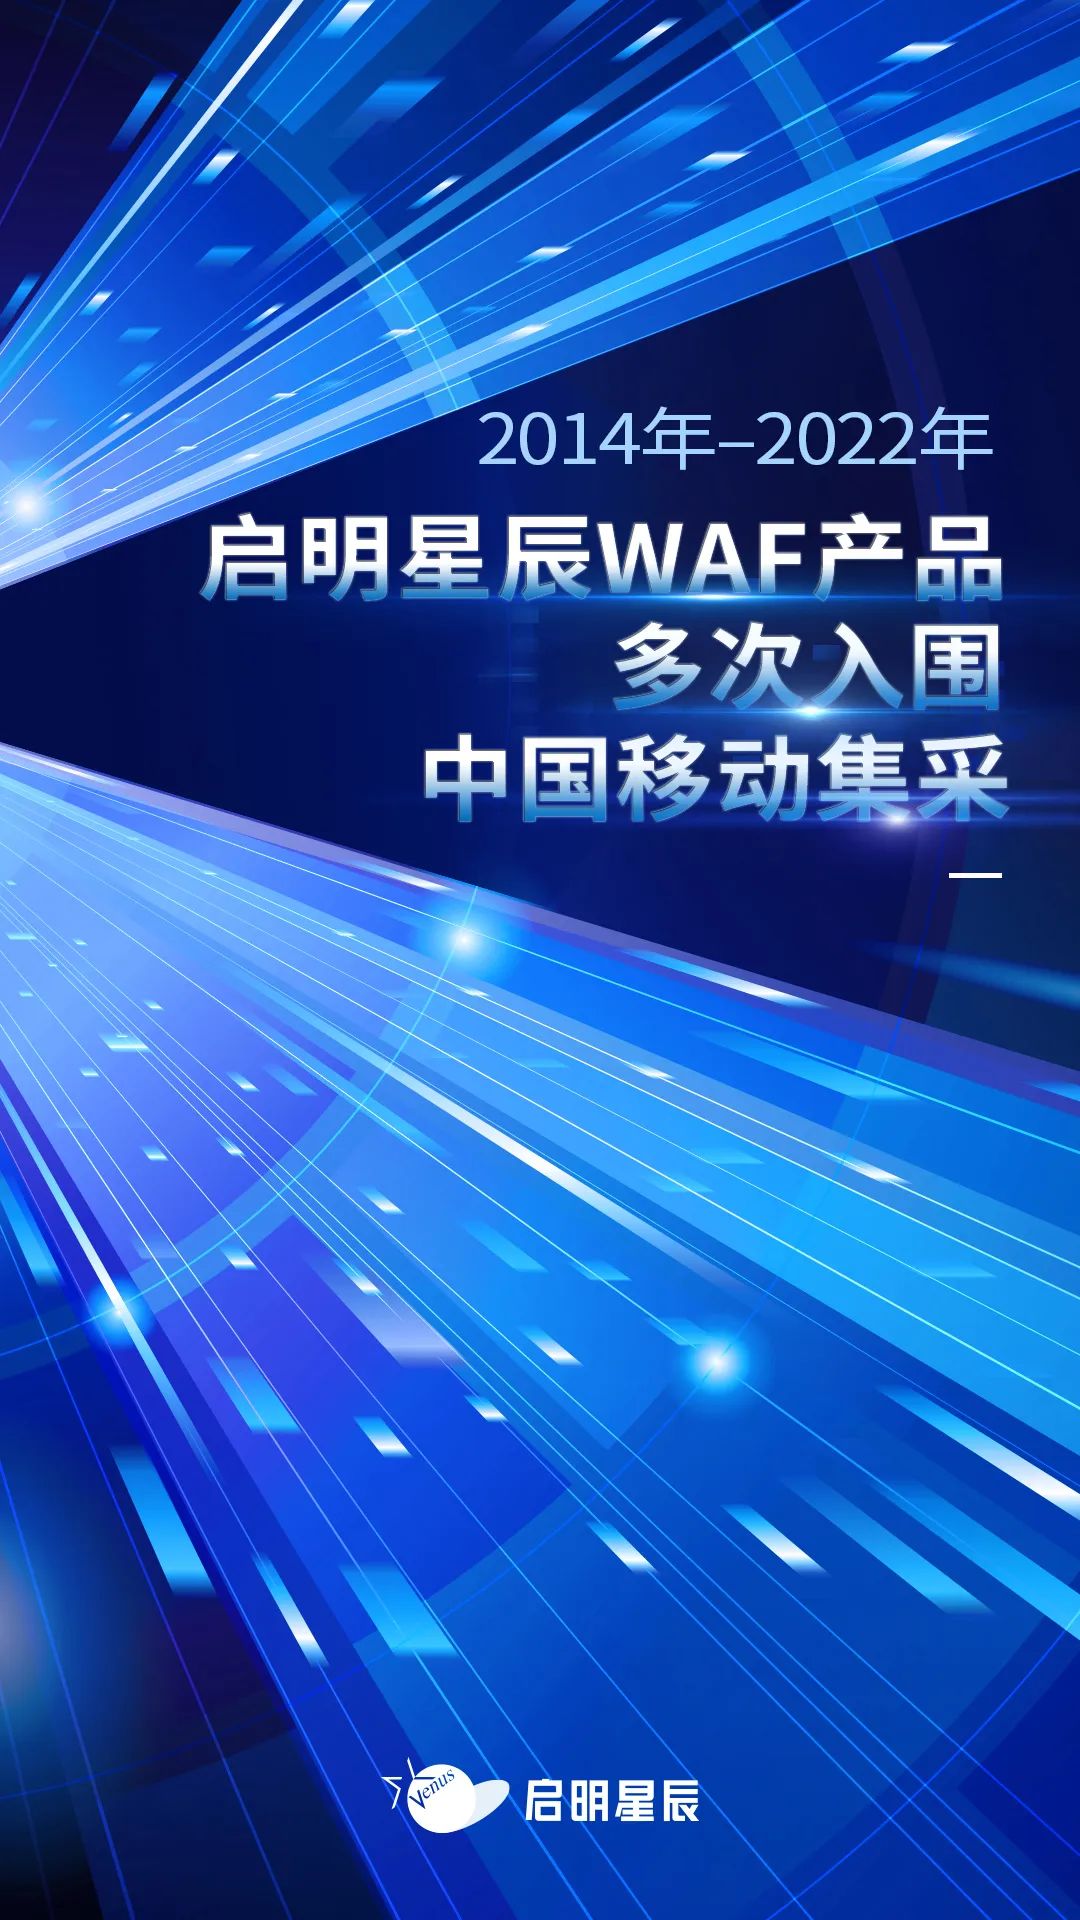 2014年至2022年启明星辰WAF产品多次入围中国移动集采